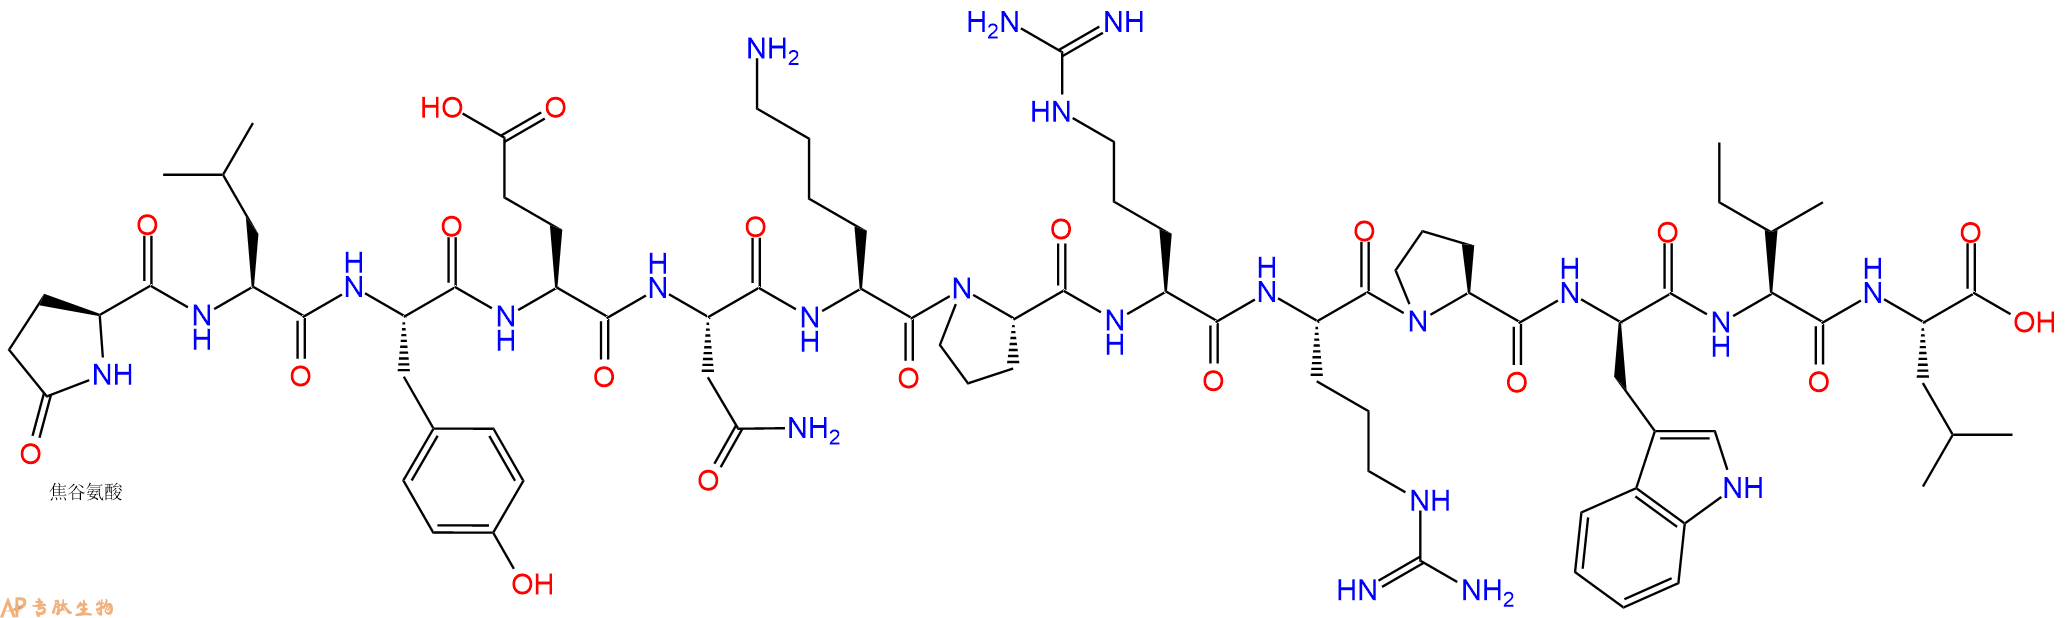 专肽生物产品神经降压肽[DTrp11]Neurotensin73634-68-1/100929-52-0